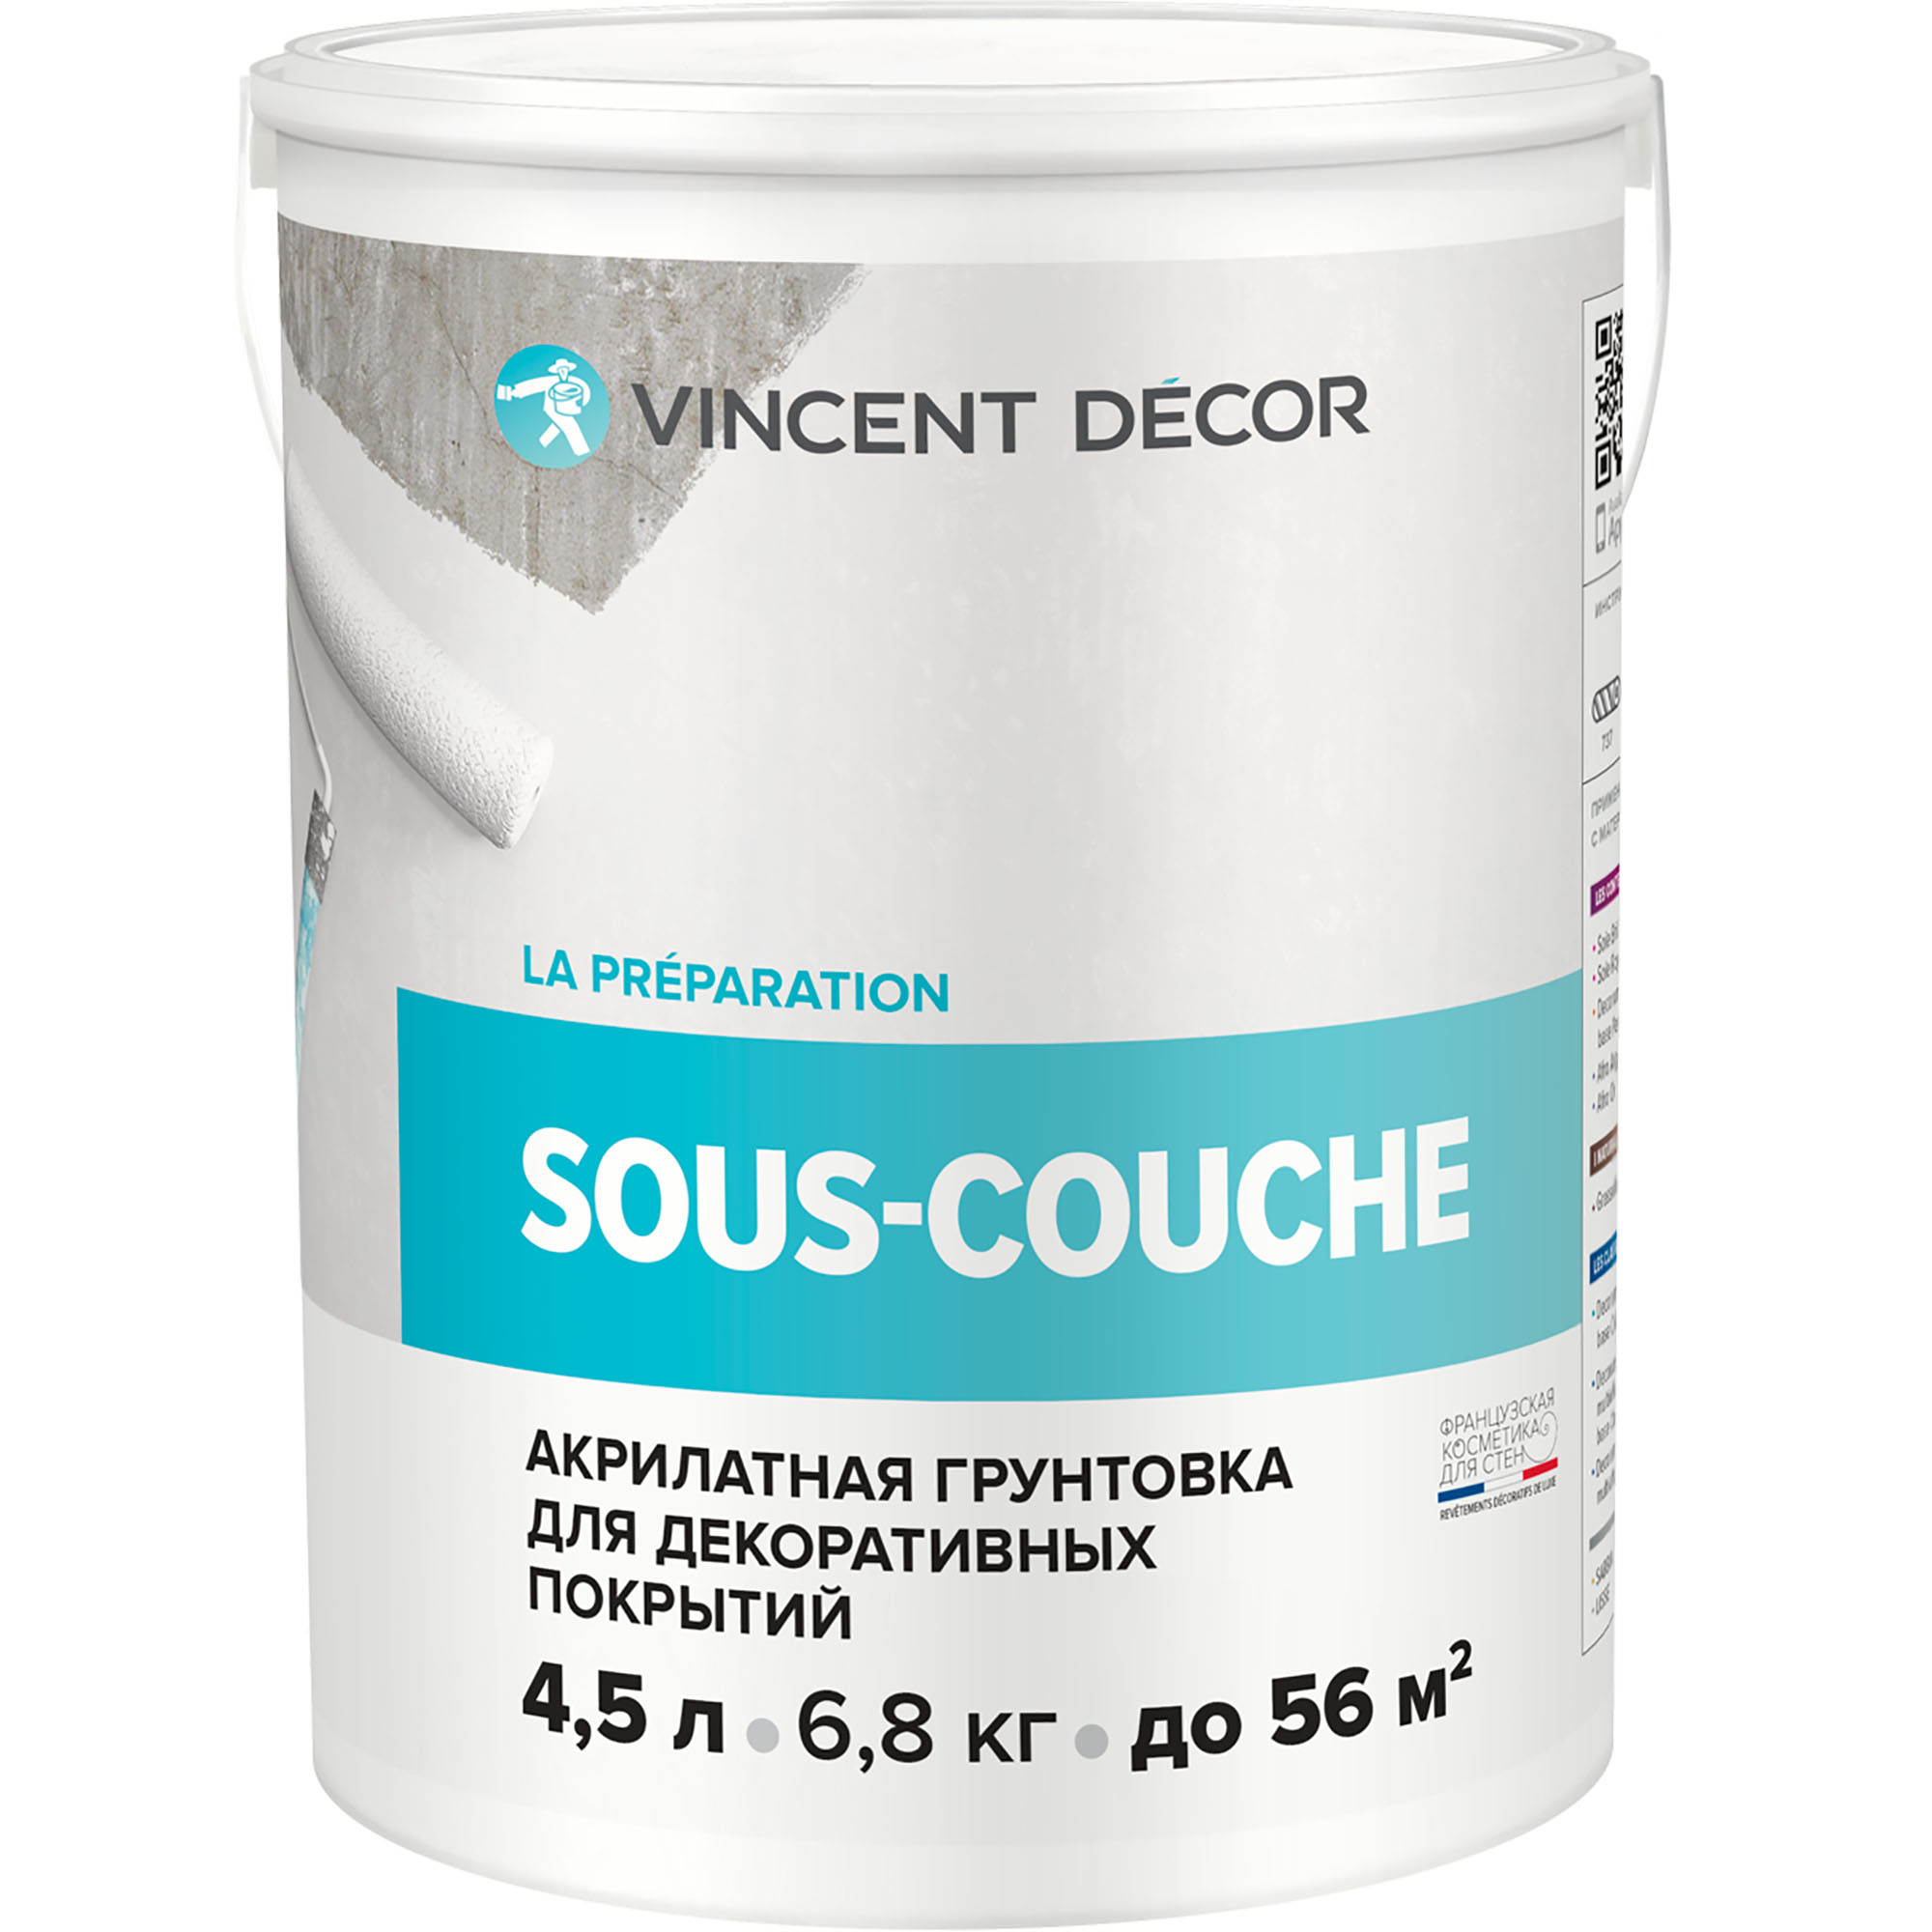 Грунтовка для декоративных покрытий Vincent Decor Sous-couche 4,5 л адгезионная грунтовка для декоративных покрытий farbitex